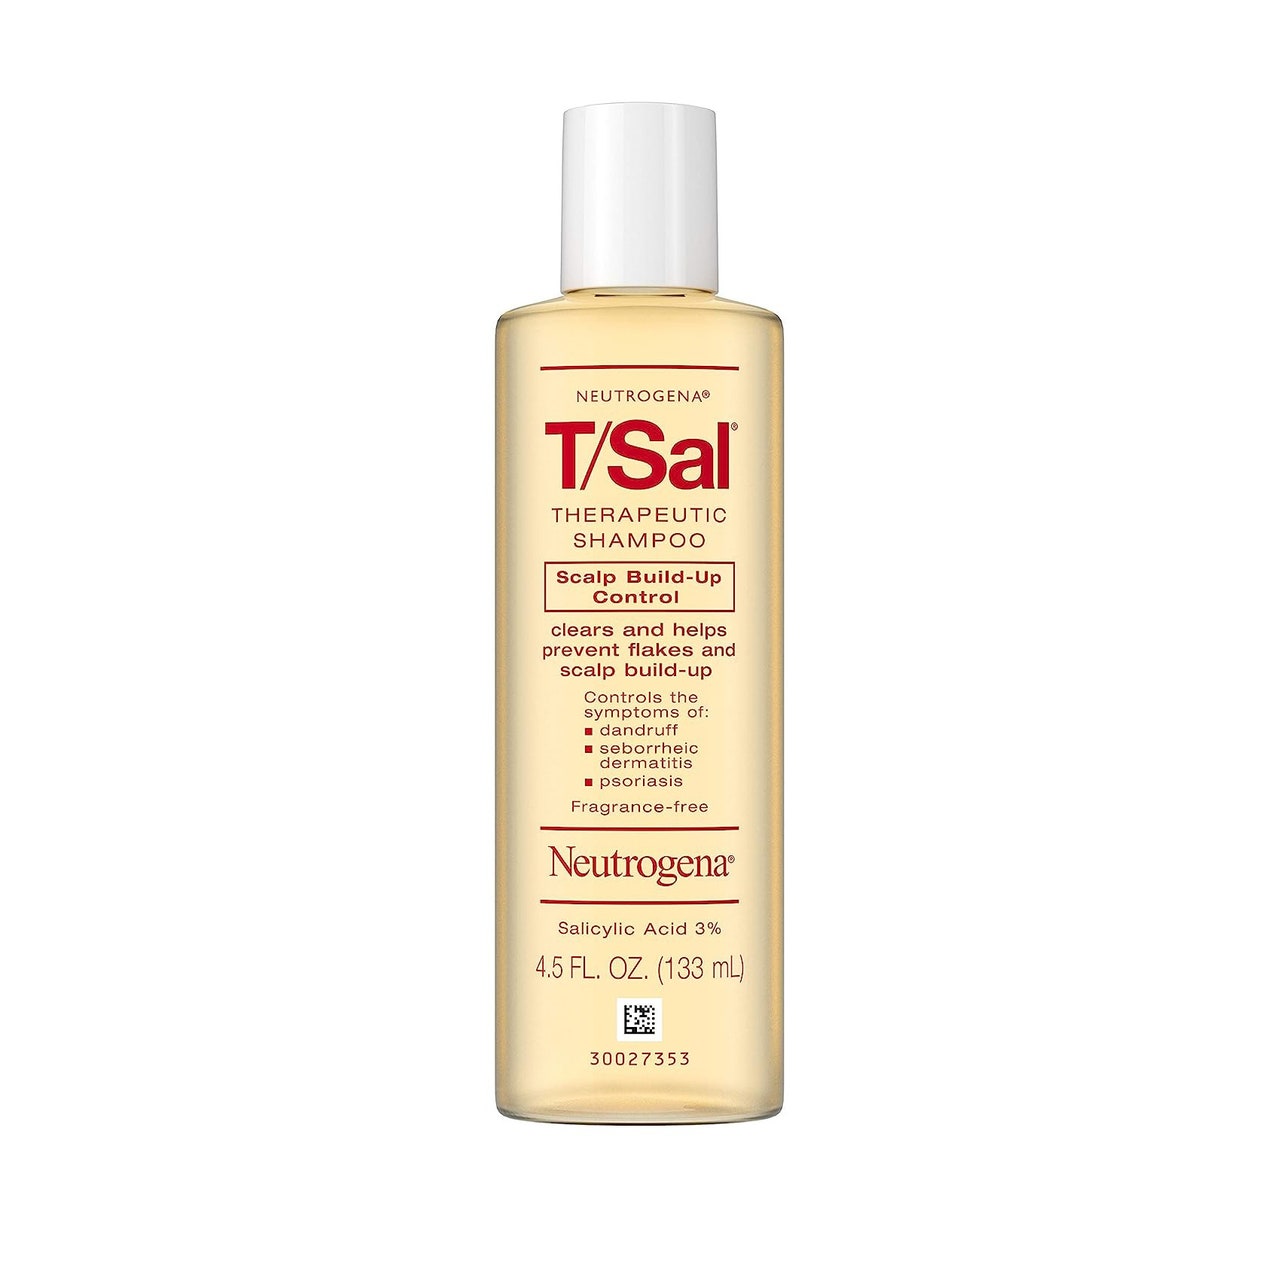 Neutrogena T/Sal Therapeutic Shampoo, gelbe Flasche mit rotem Text und weißem Verschluss auf weißem Hintergrund